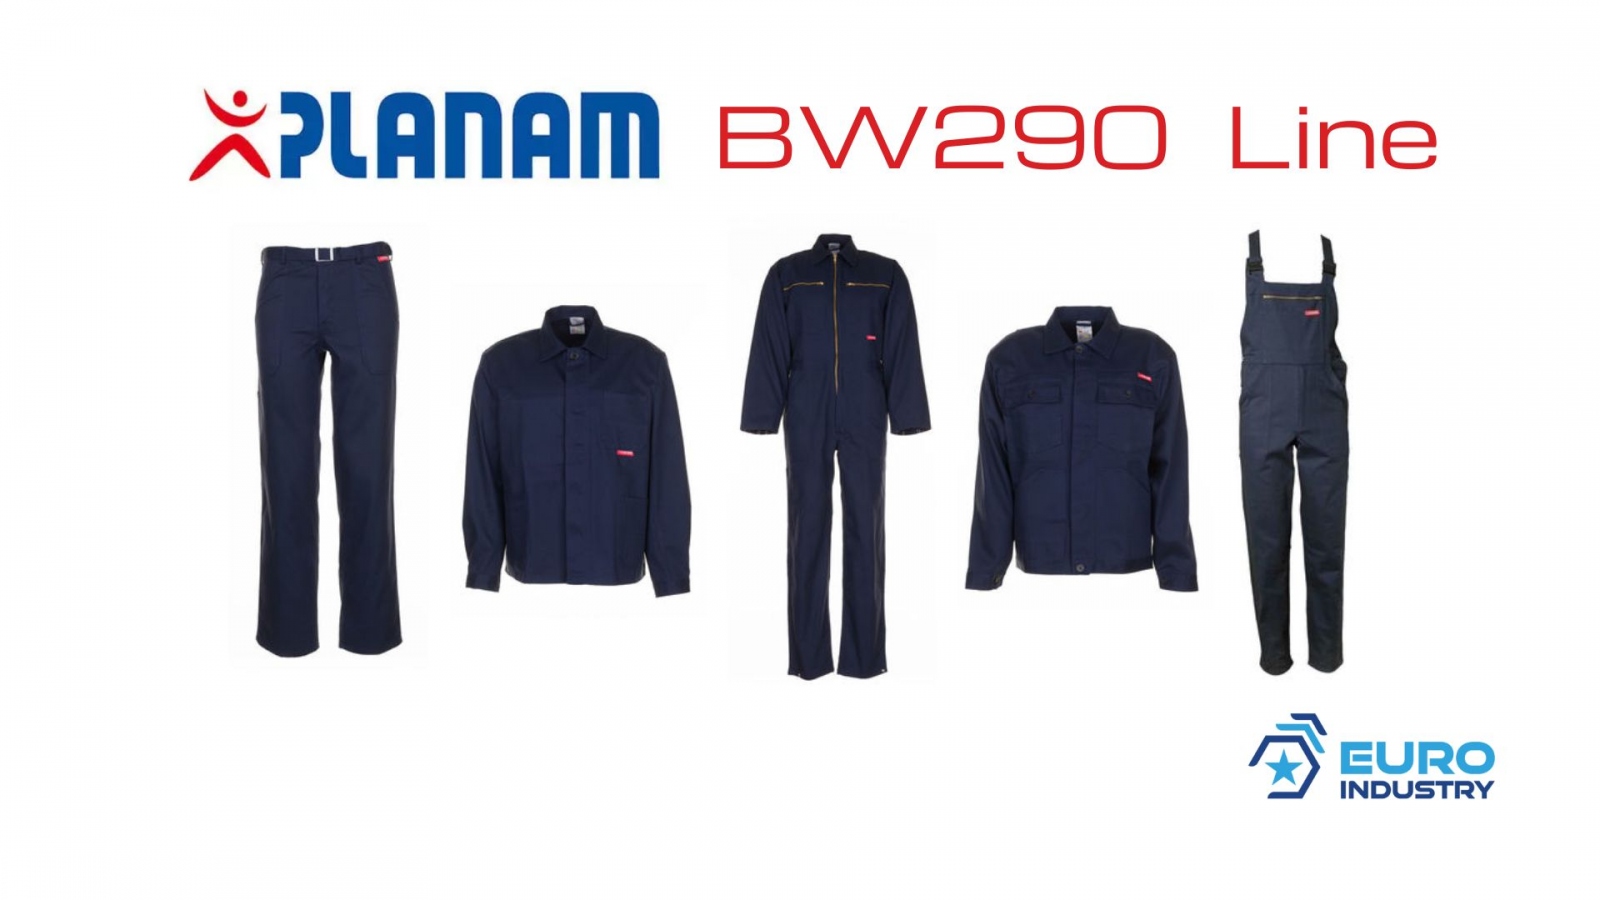 pics/Planam/bw-290/planam-bw-290-linie-hydronblau-baumwolle-details.jpg